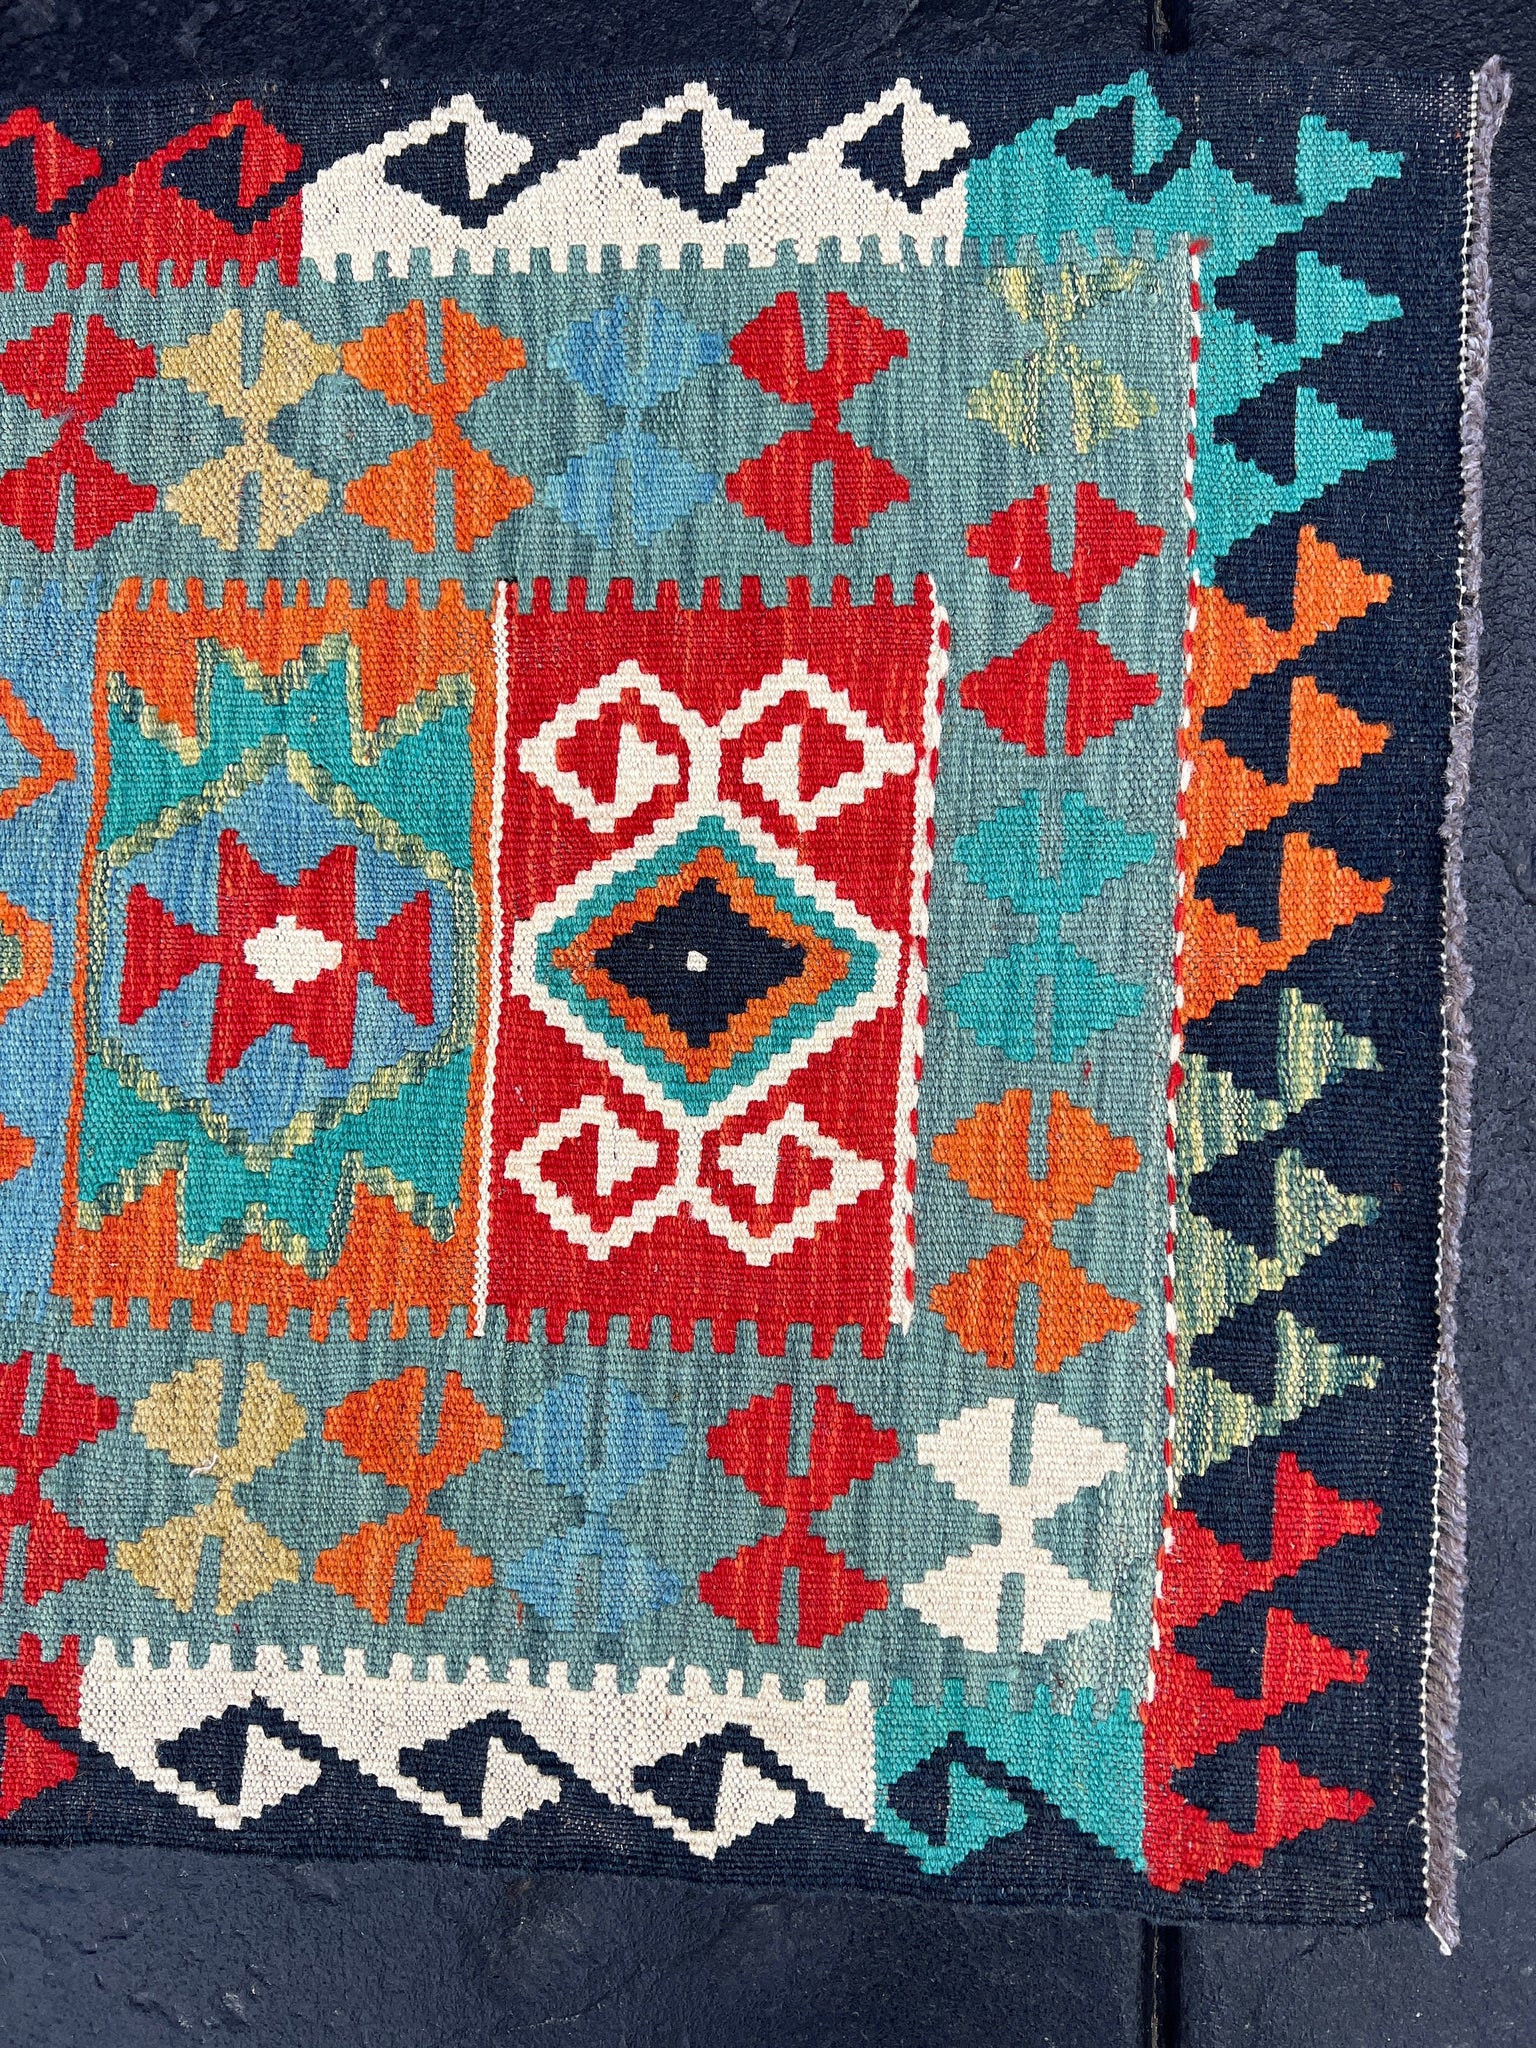 2x10~3x10 (90x335) Handmade Afghan Kilim Runner Rug | Teal Olive Burnt Orange Turquoise Denim Blue Brick Red Mint Green Ivory Geometric Wool